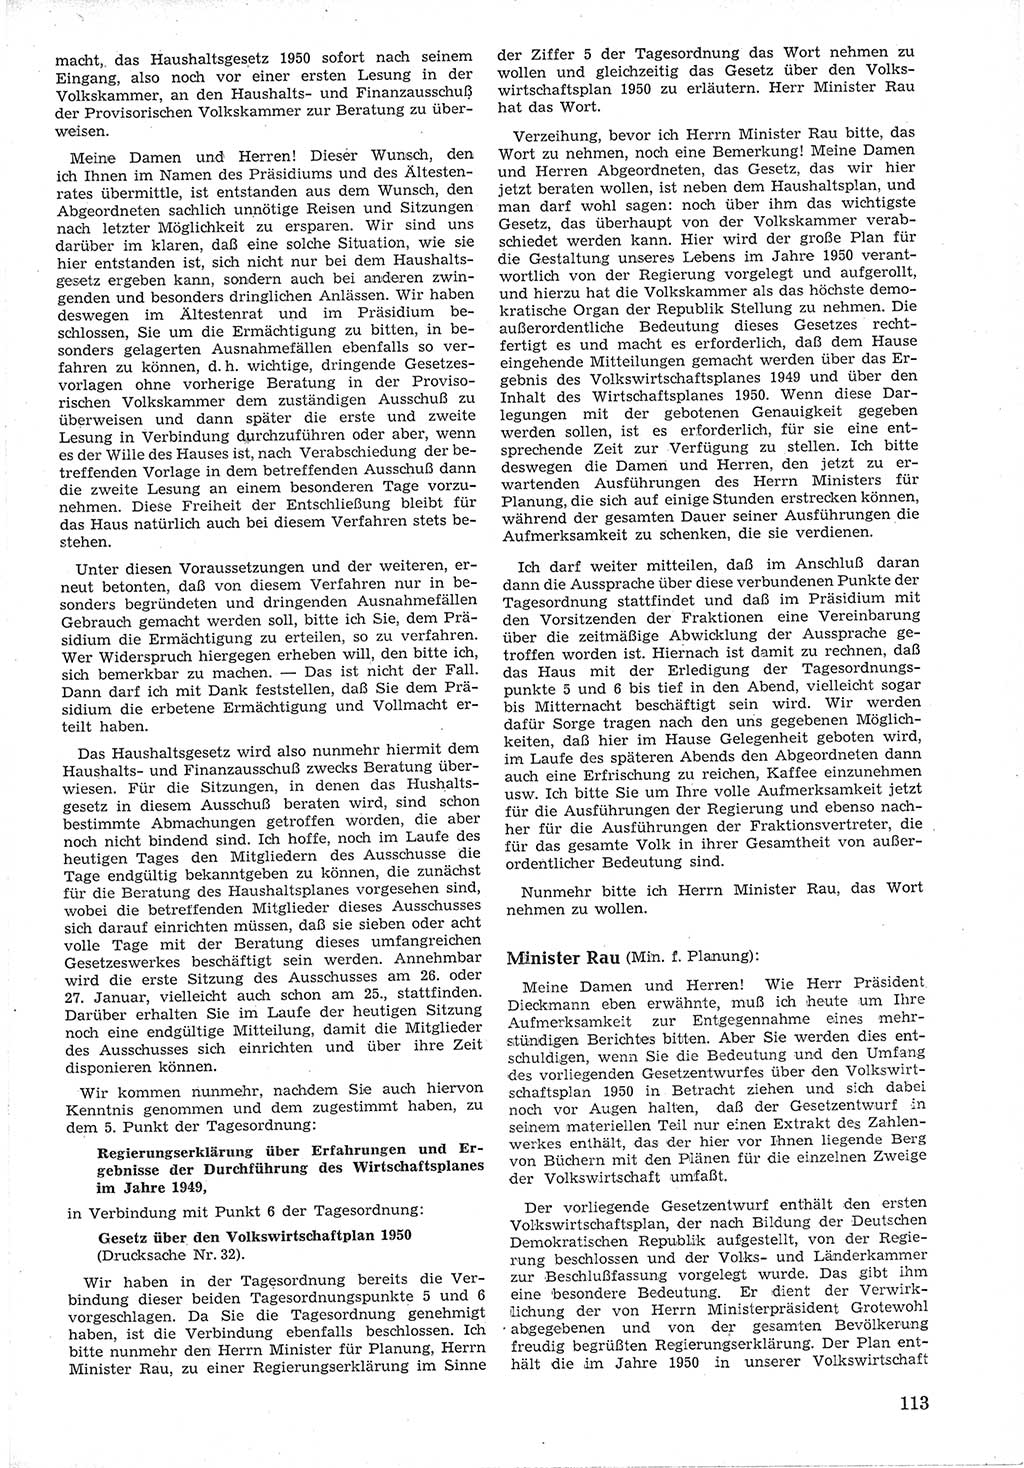 Provisorische Volkskammer (VK) der Deutschen Demokratischen Republik (DDR) 1949-1950, Dokument 125 (Prov. VK DDR 1949-1950, Dok. 125)